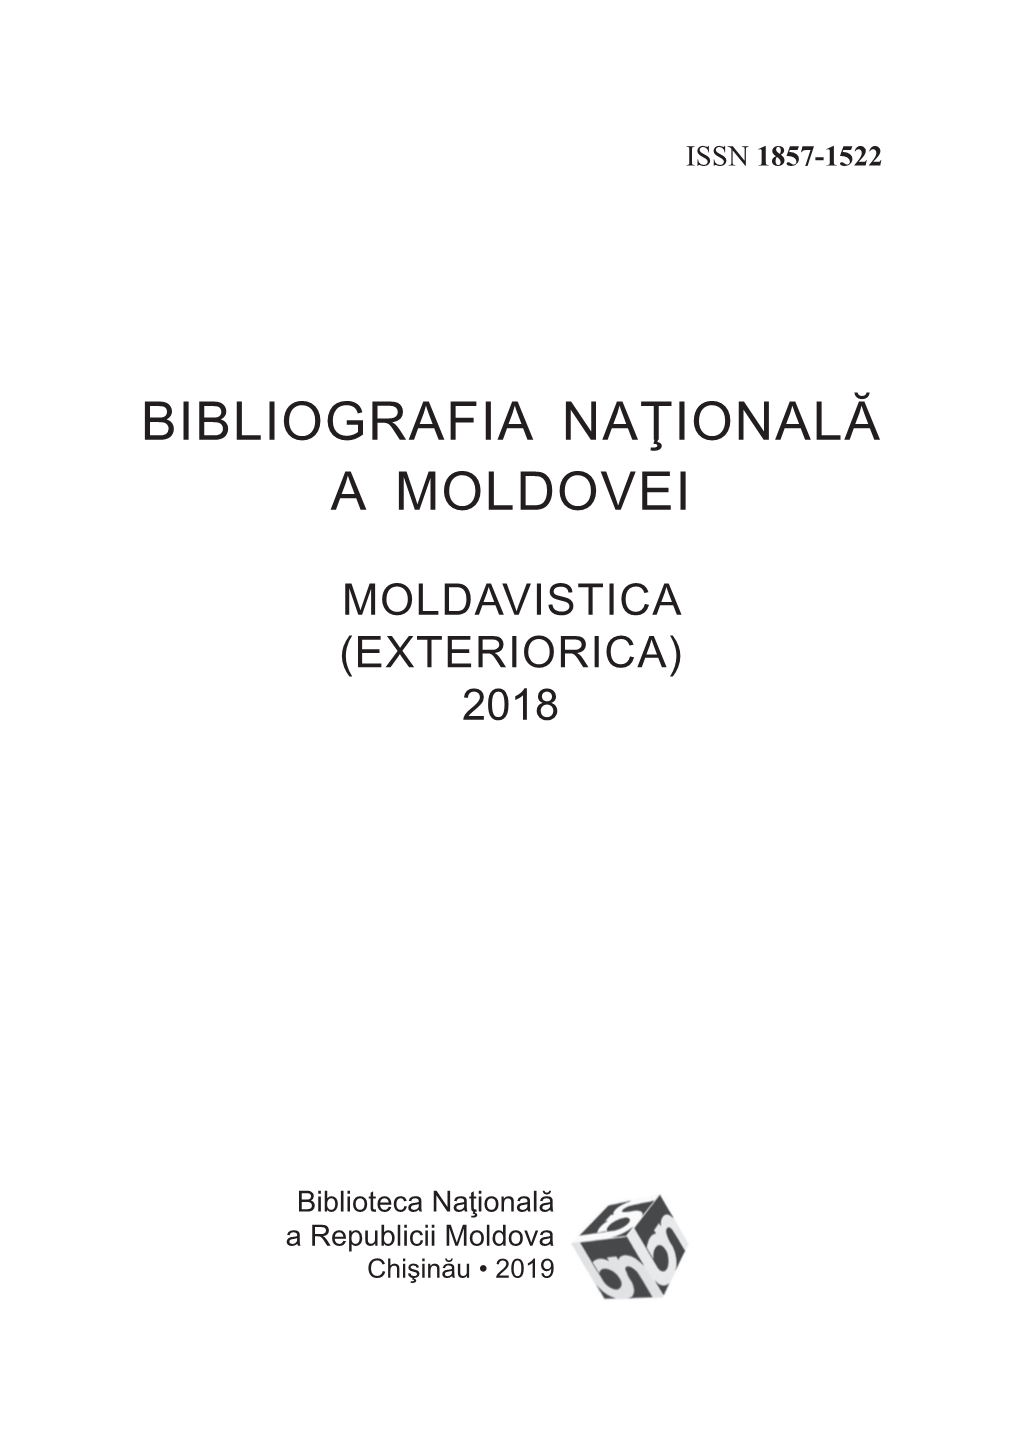 Bibliografia Naţională a Moldovei